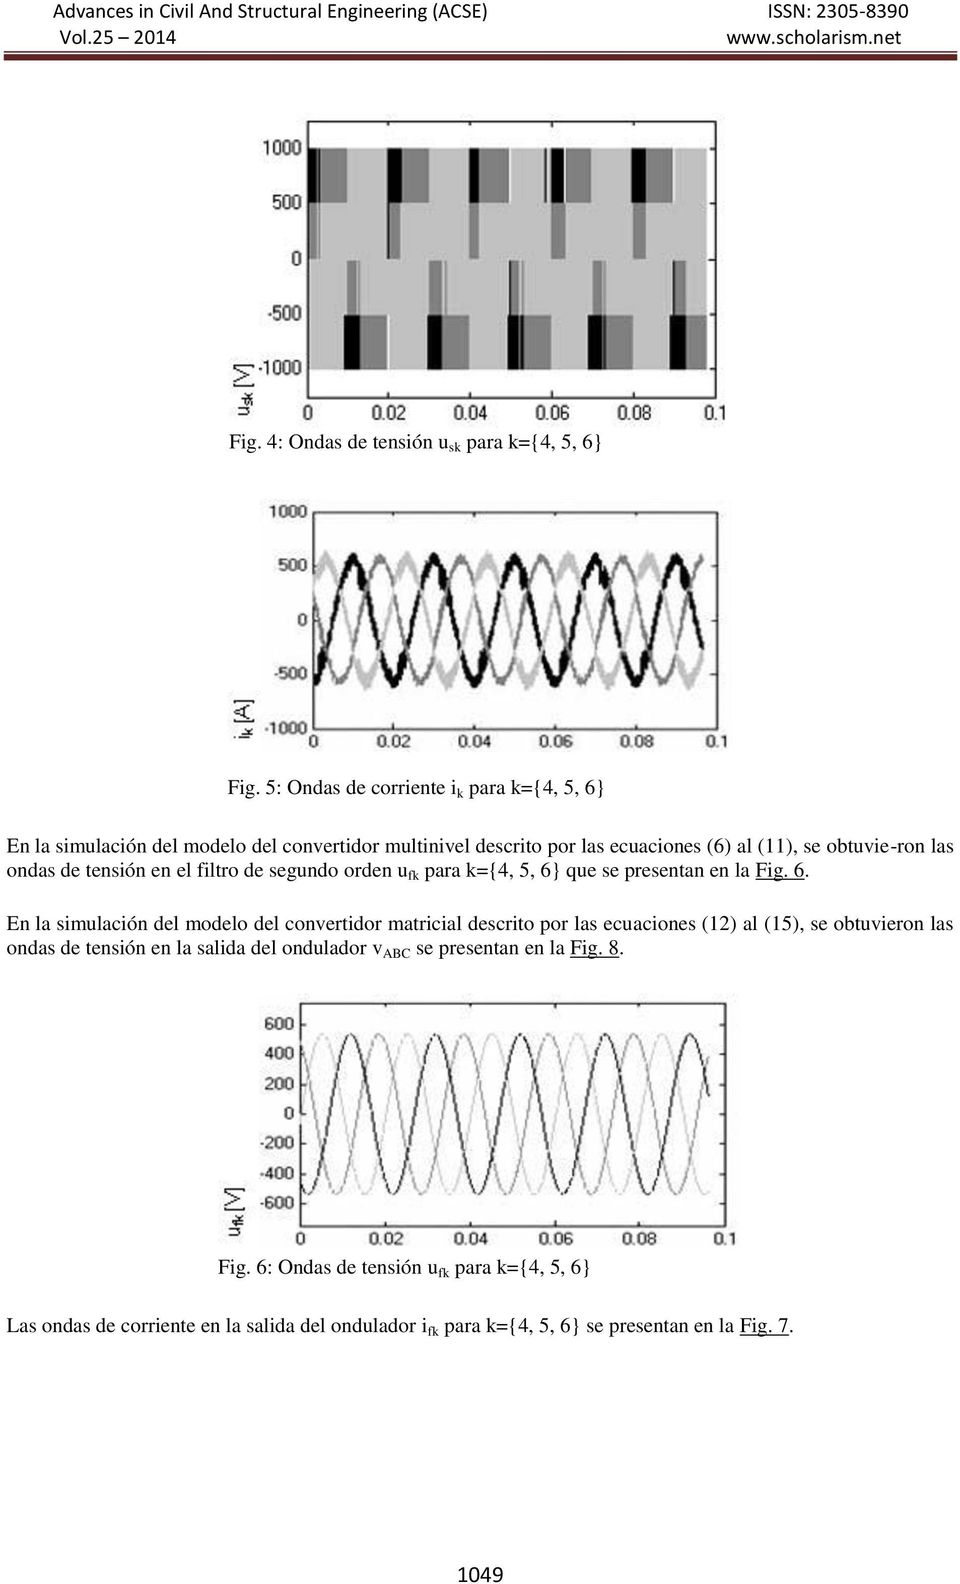 ondas de tensión en el filtro de segundo orden u fk para k={4, 5, 6}